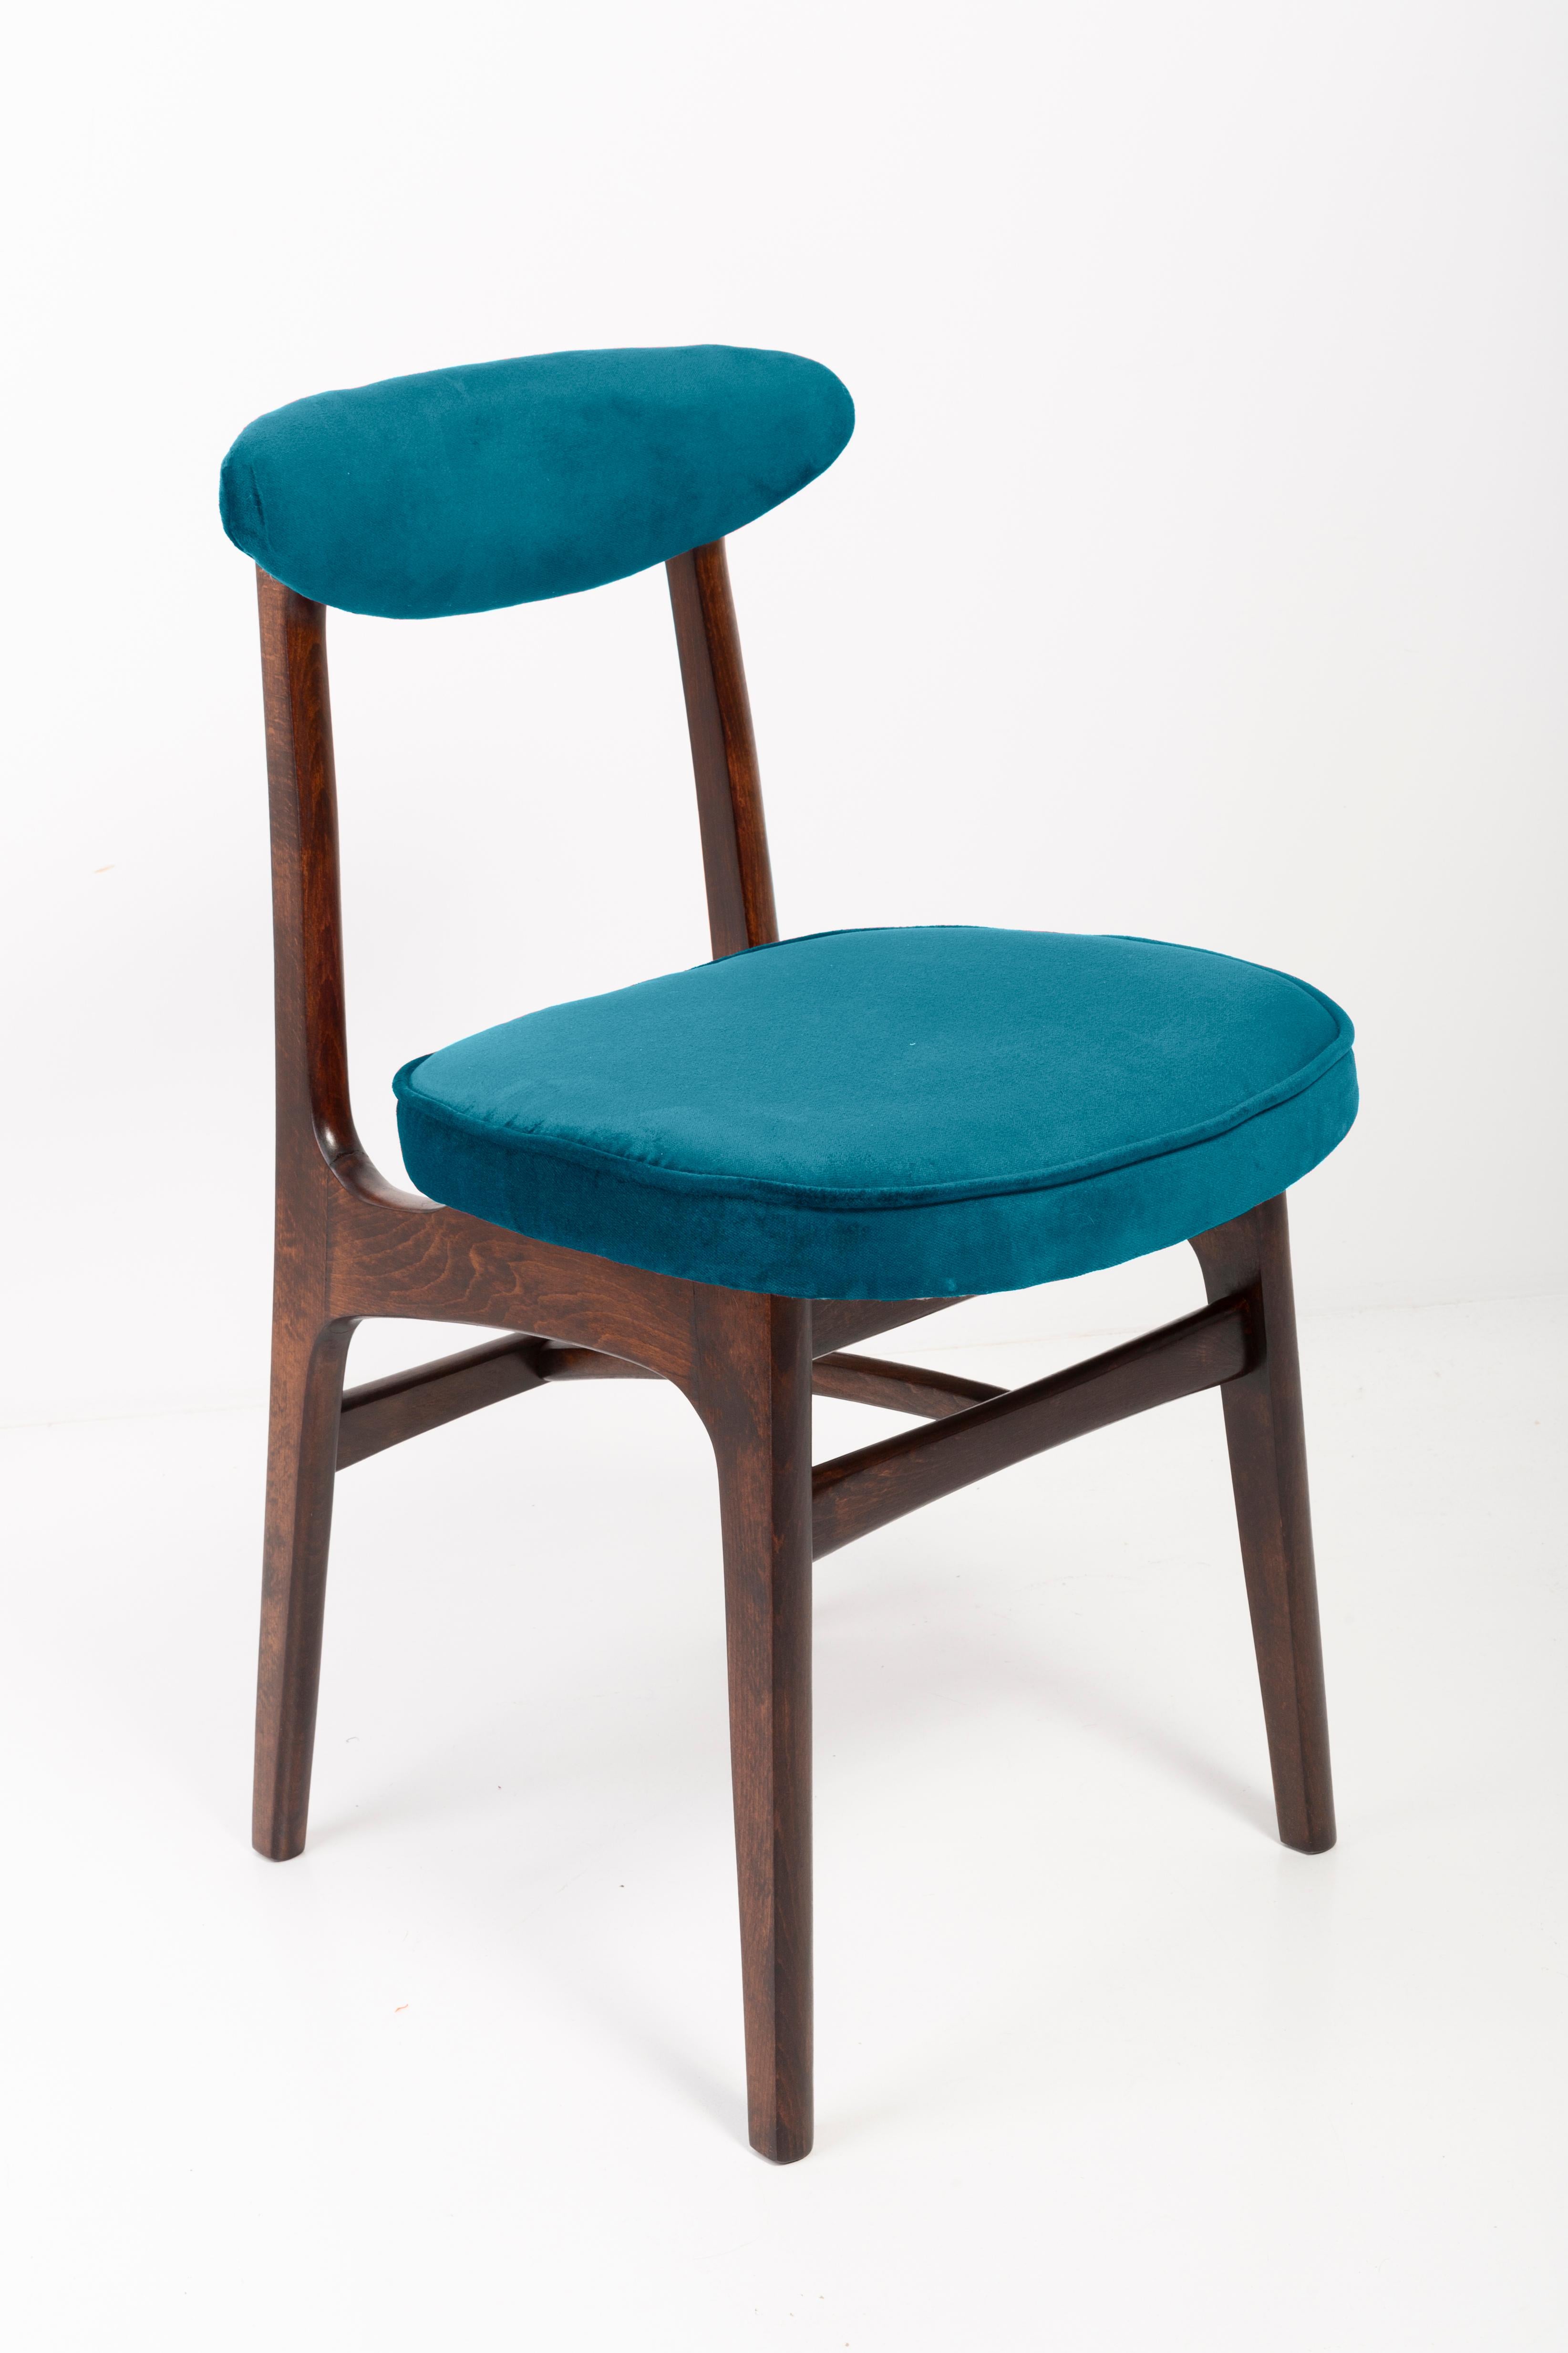 Douze chaises conçues par le professeur Rajmund Halas. Il a été fabriqué en bois de hêtre. Les chaises ont subi une rénovation complète de leur rembourrage et les boiseries ont été rafraîchies. Les sièges et les dossiers ont été habillés d'un tissu